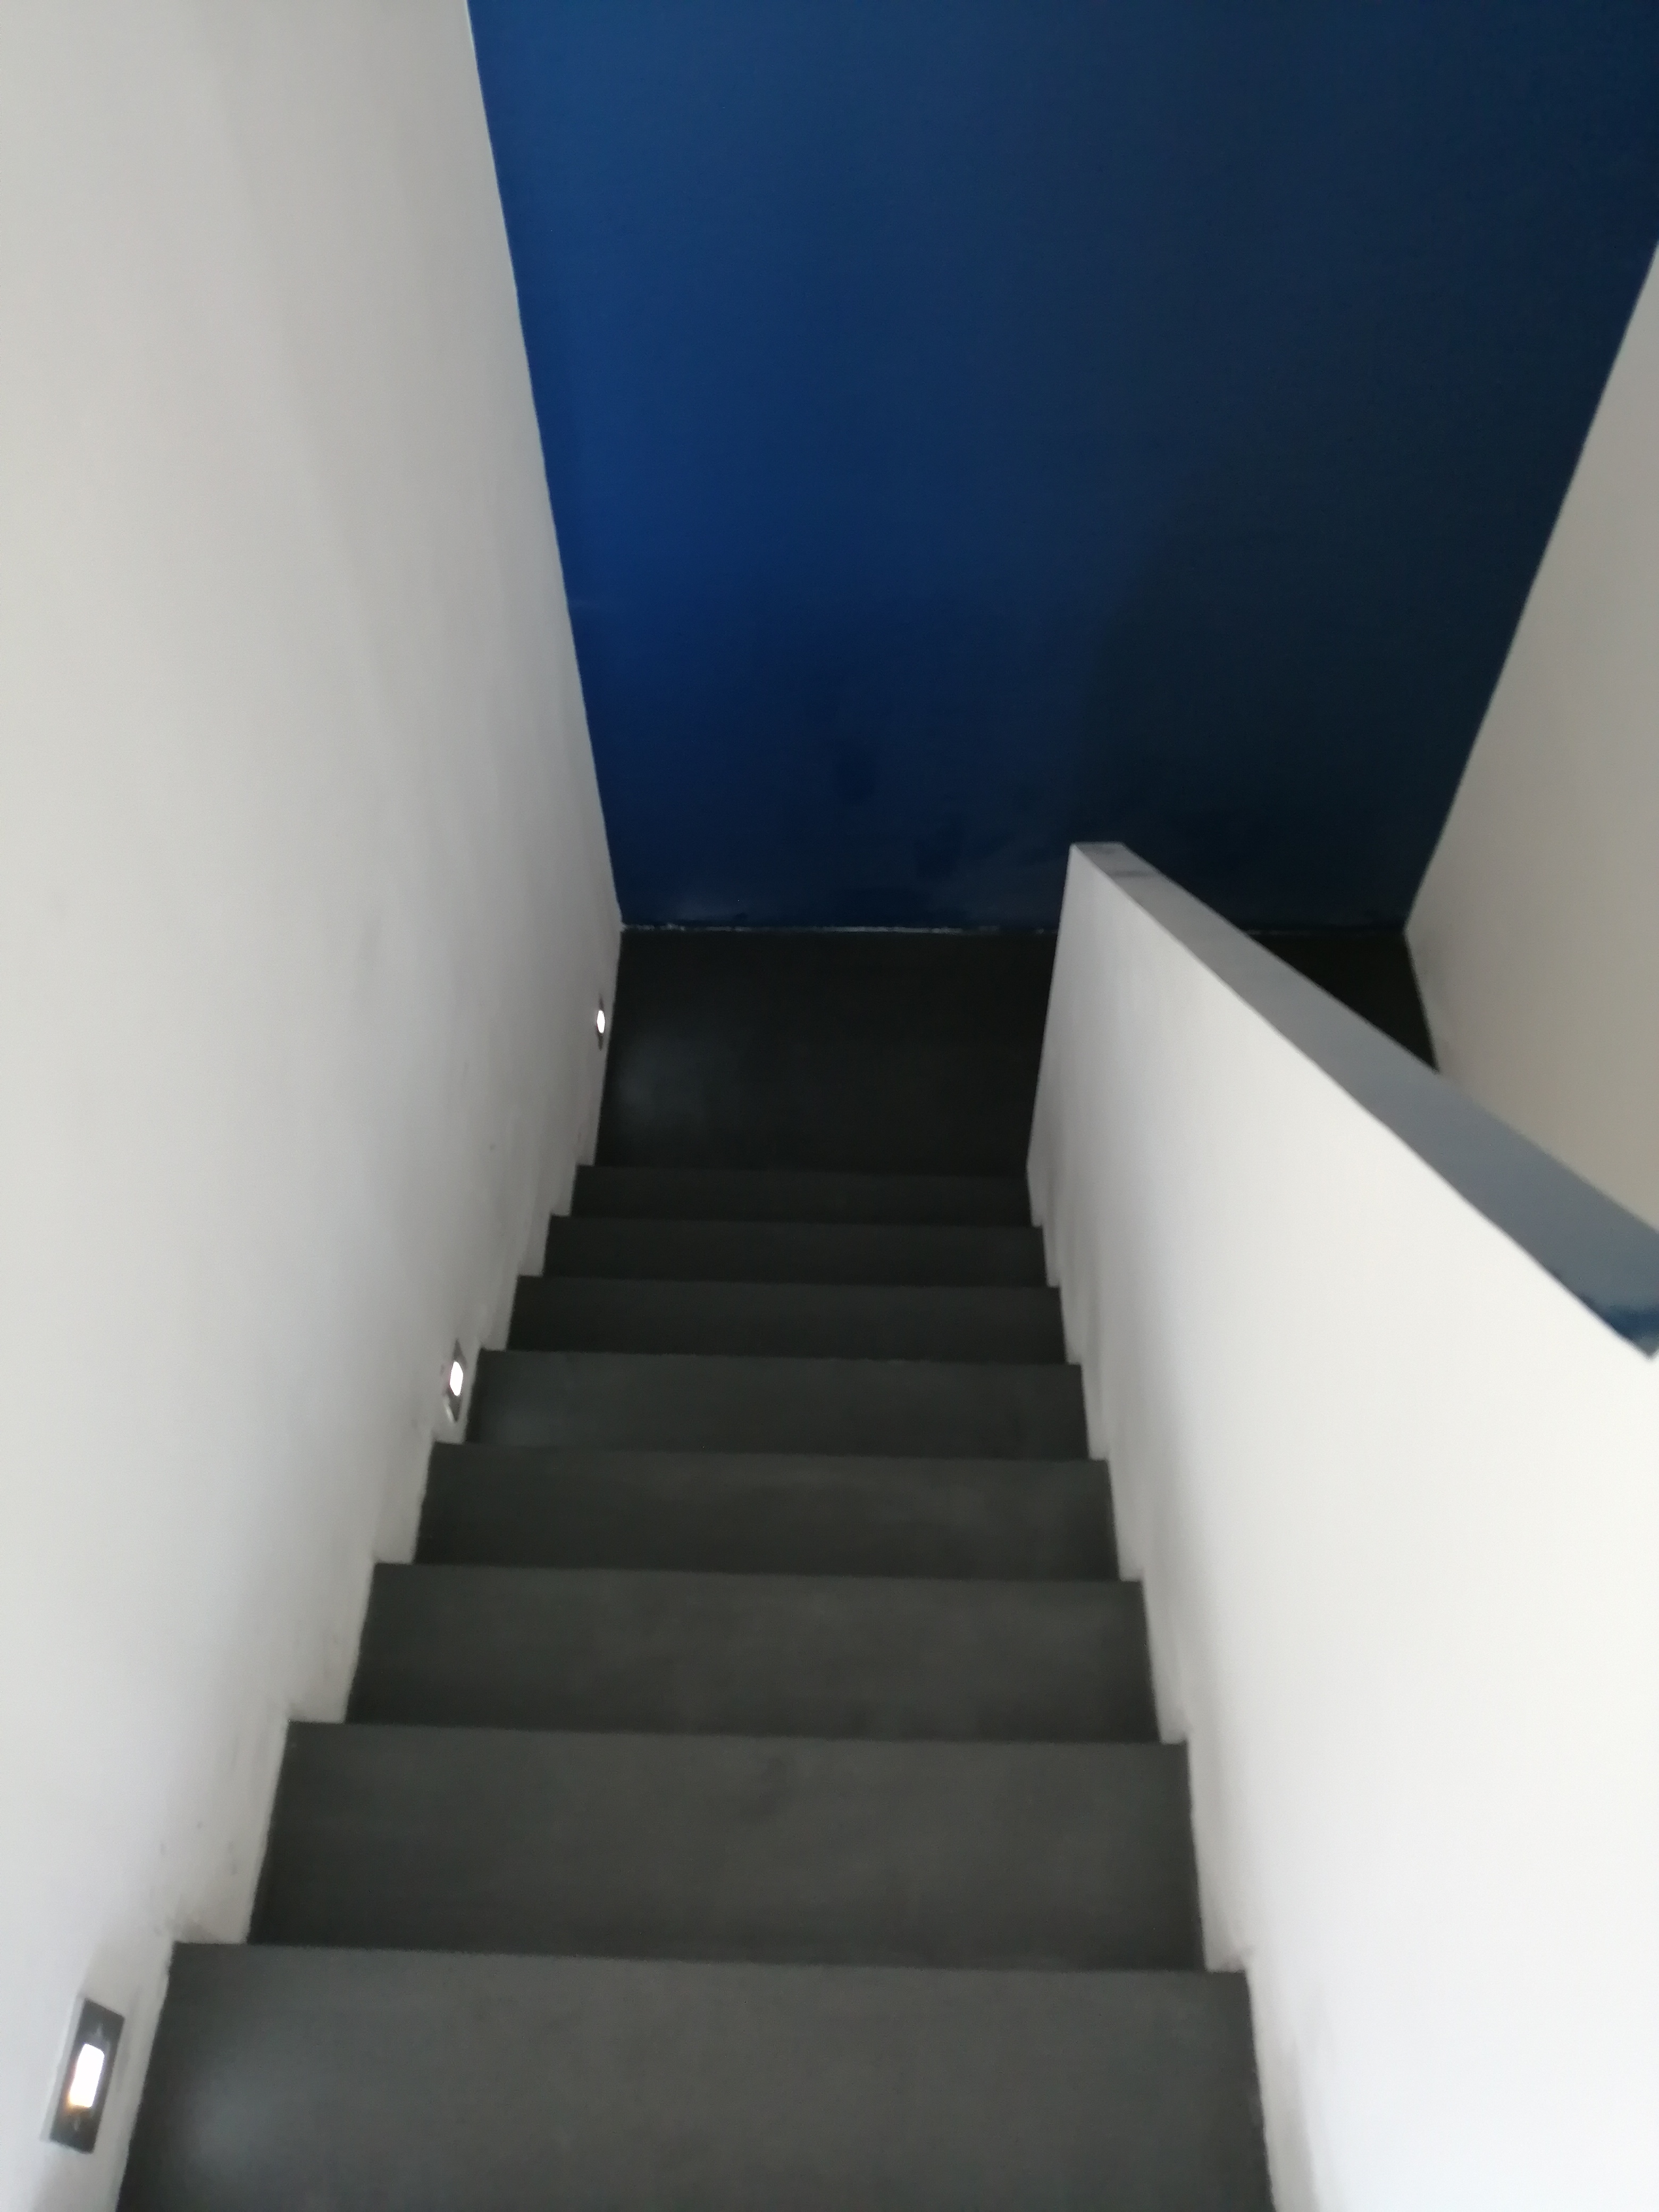 elégant escalier à paillasse avec palier intermédiaire en béton ciré vernis mat couleur alchimie à Montpellier dans l herault en Languedoc  pour un particulier